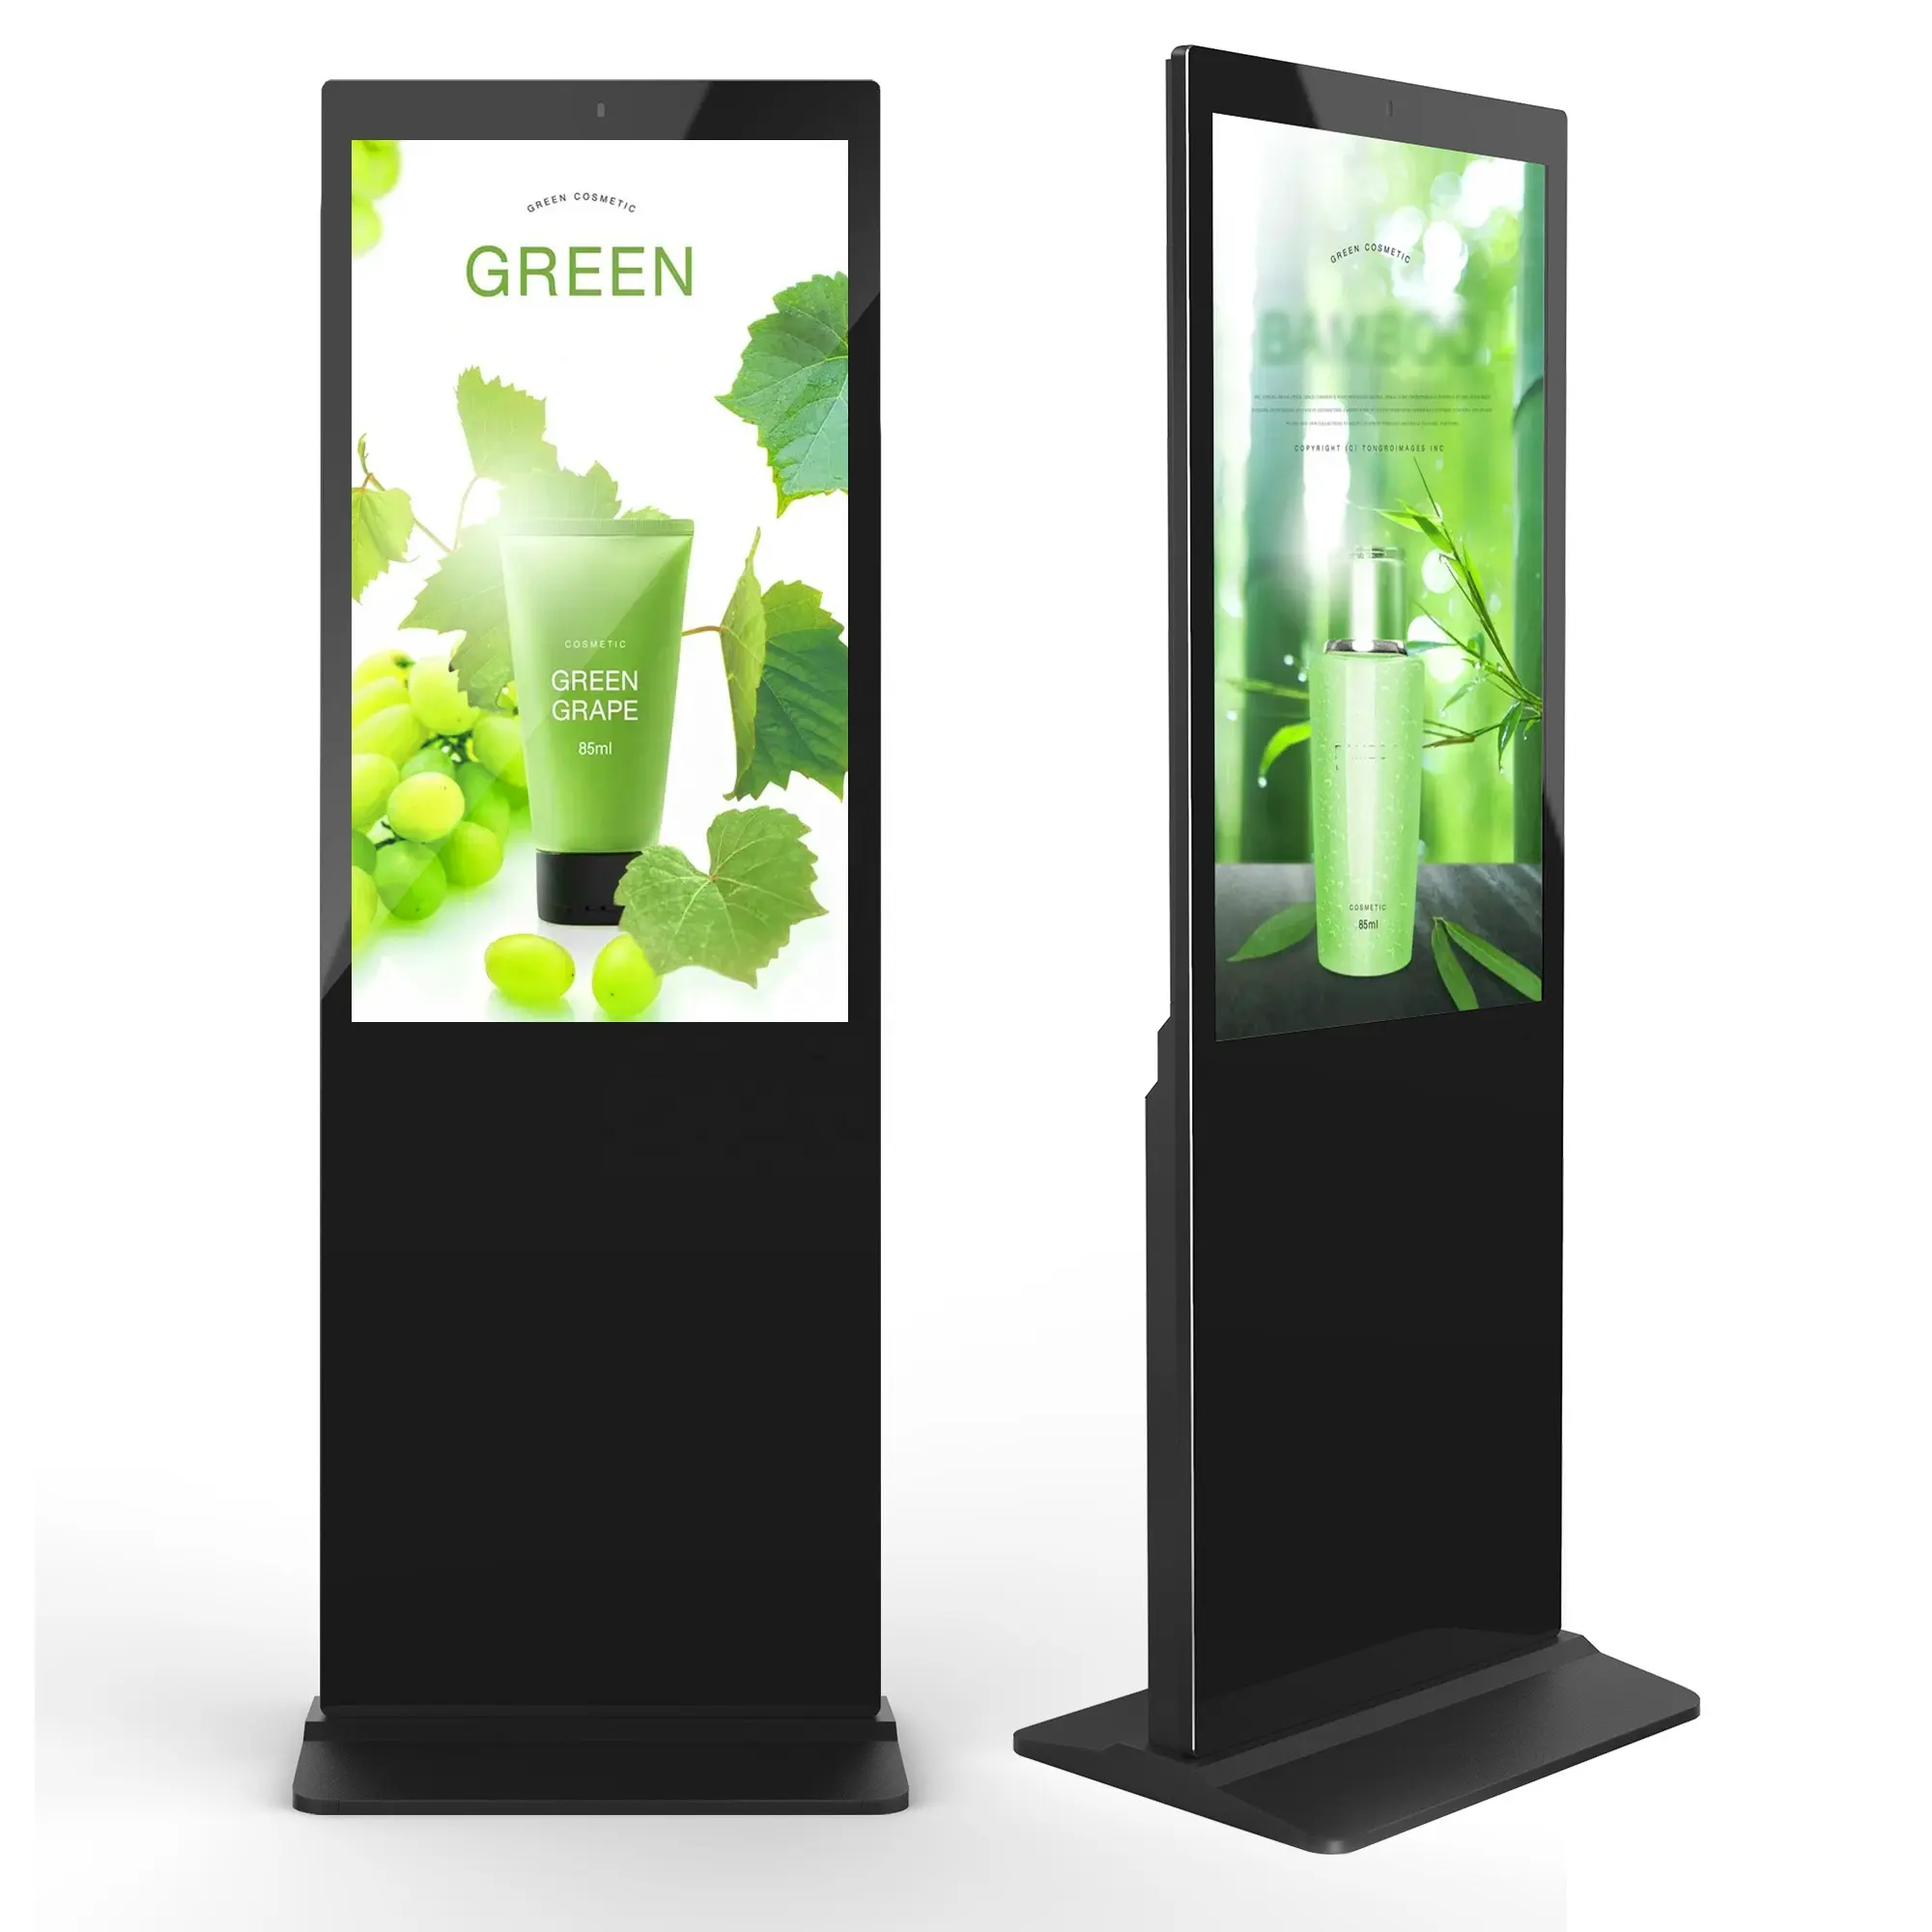 Aiyos 43 49 55 65 inch lcd kiosk floor standing digital signage menu display screen for indoor using